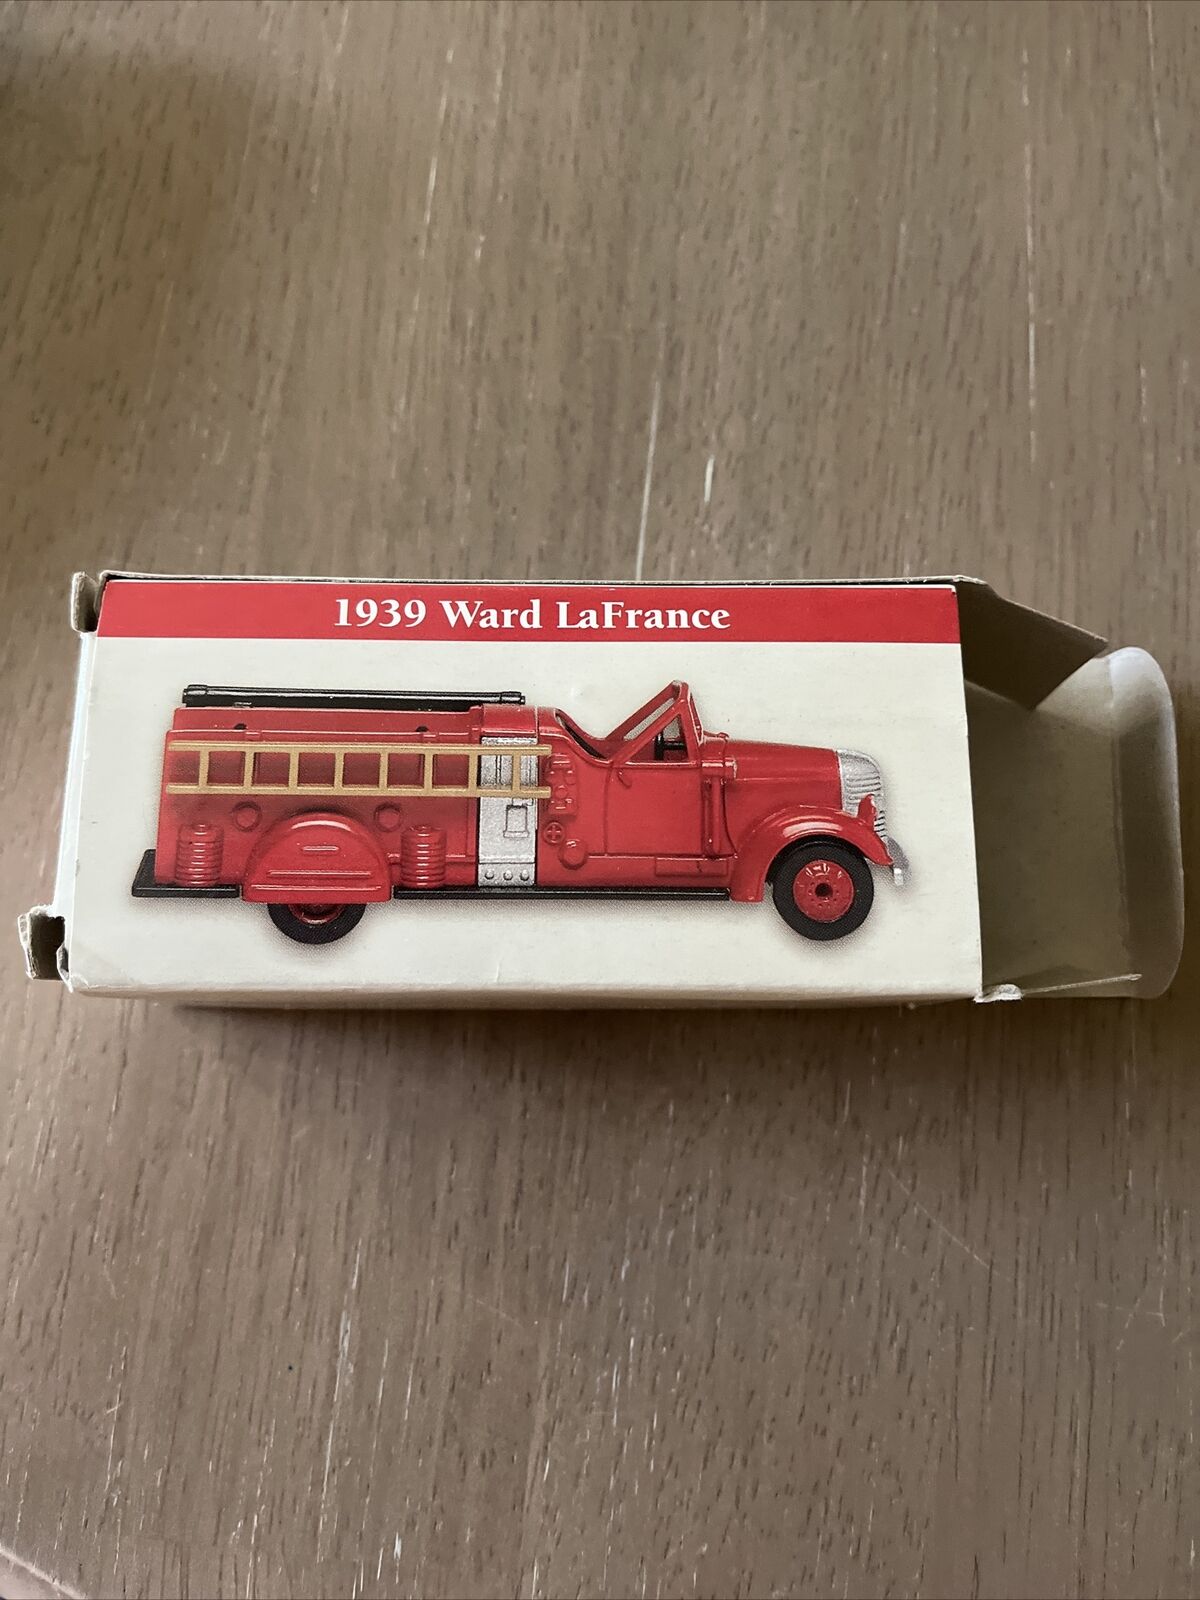 1939 ward lafrance fire truck (205)